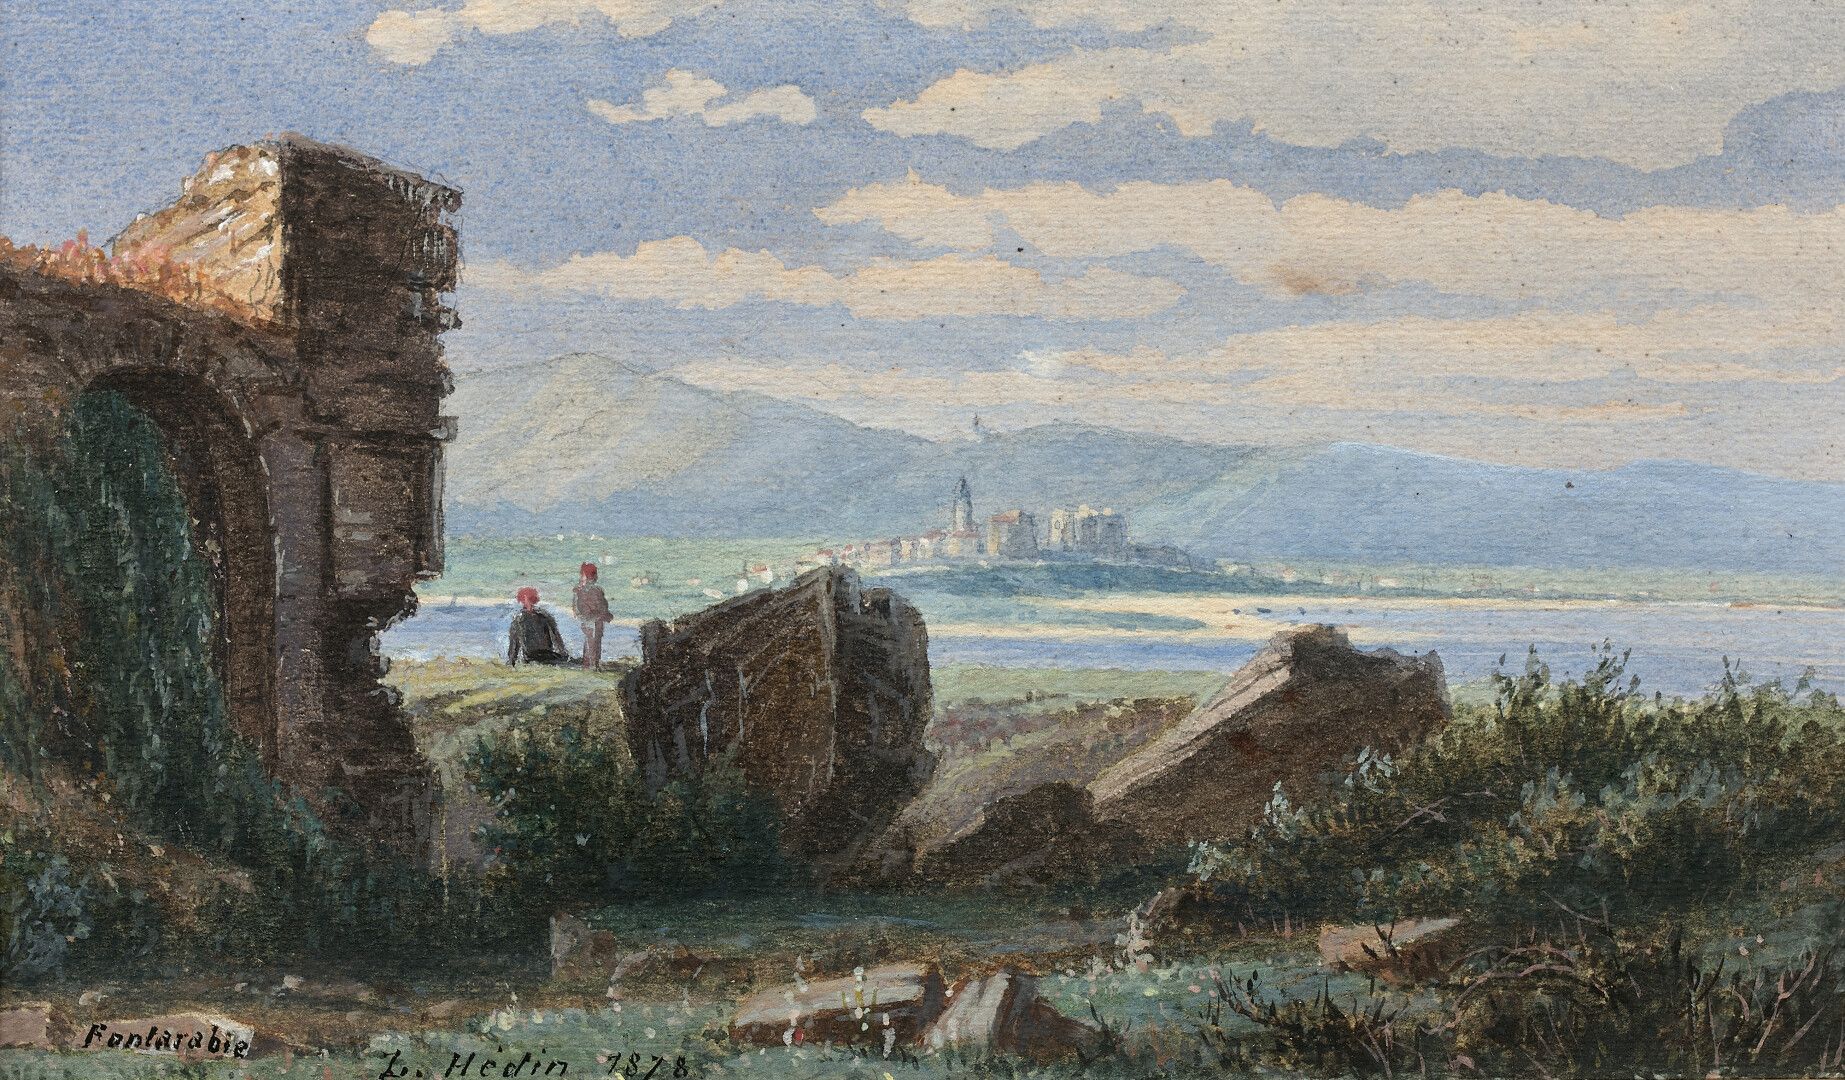 Null Louis HEDIN (1818-1886)

Fontarrabie, Blick vom Fort d'Hendaye aus, 1878.

&hellip;